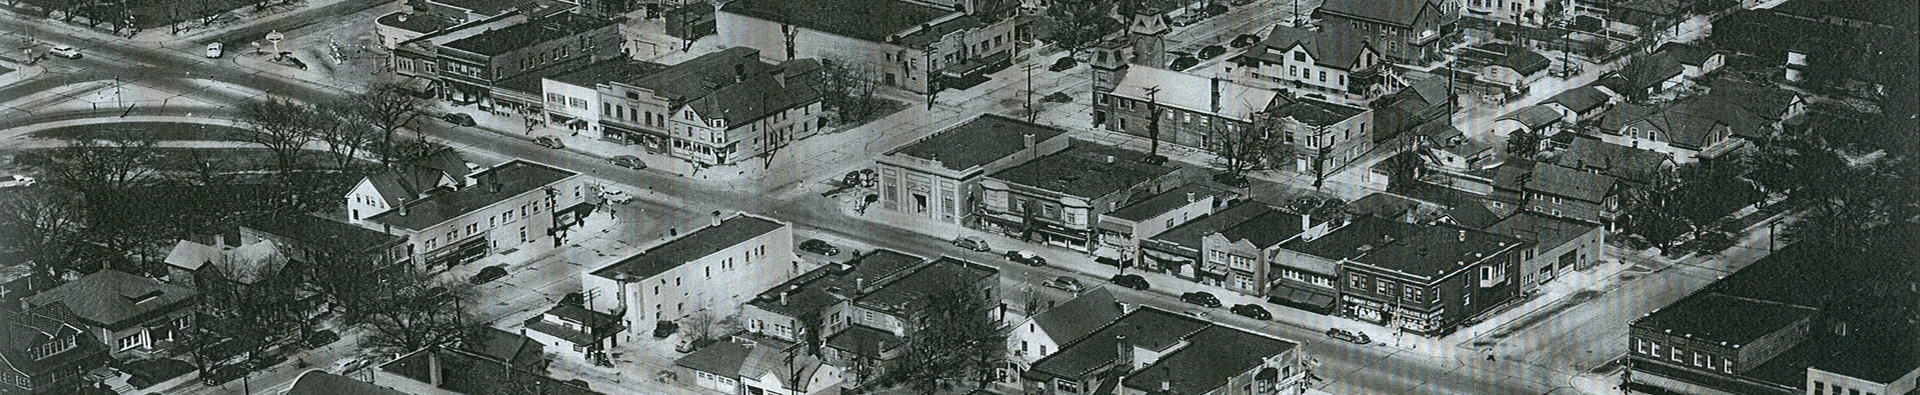 Cudahy - aerial view 1950s